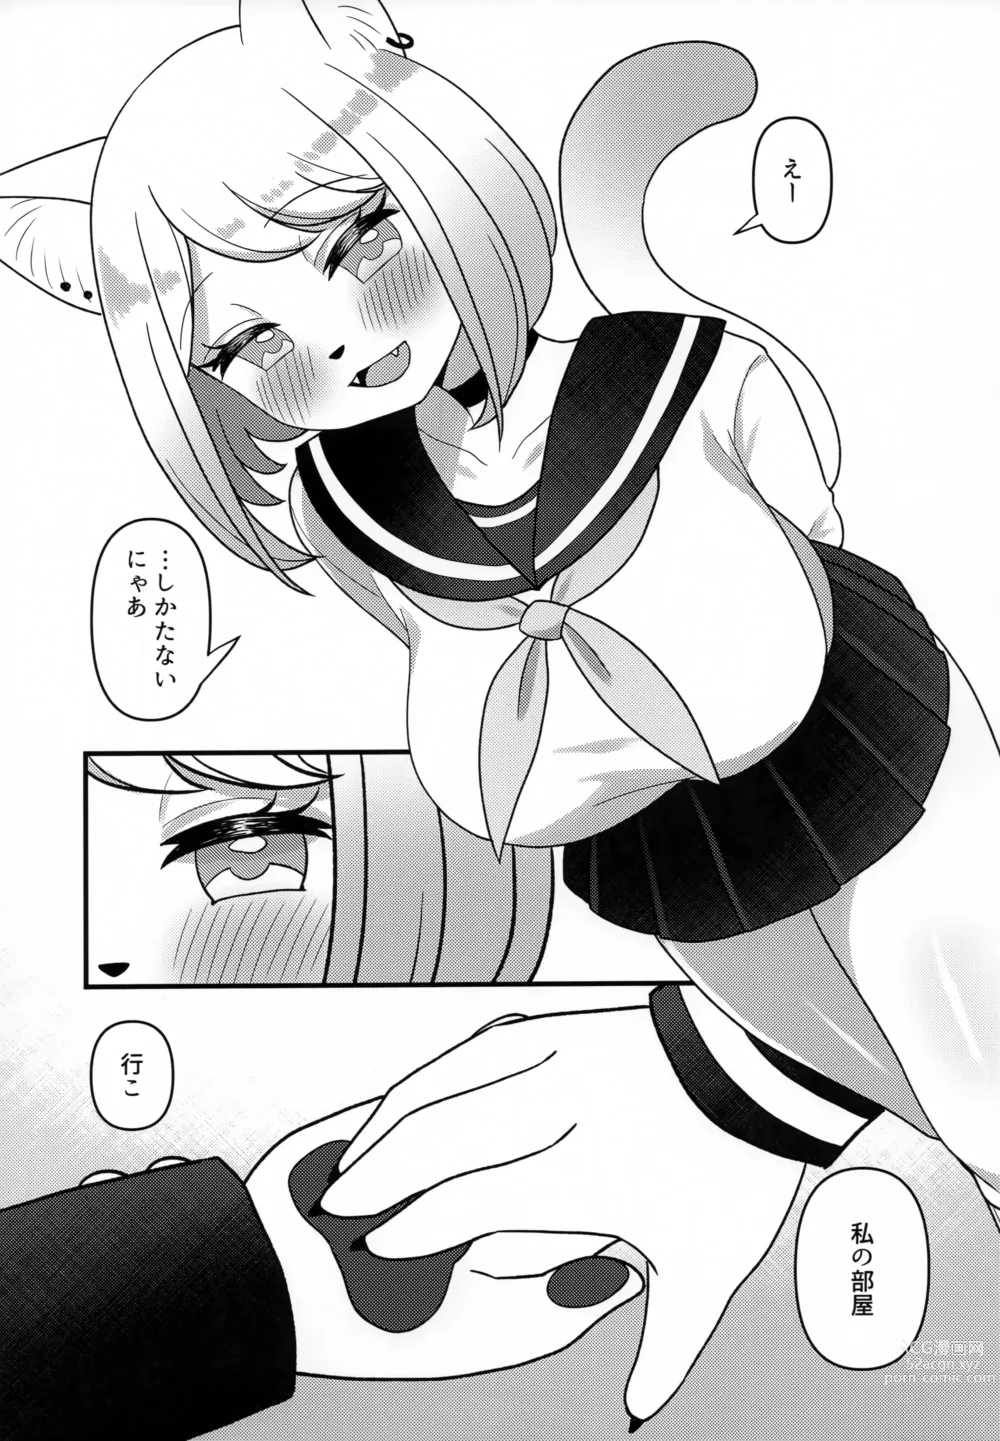 Page 6 of doujinshi Neko Shitei no Himitsu